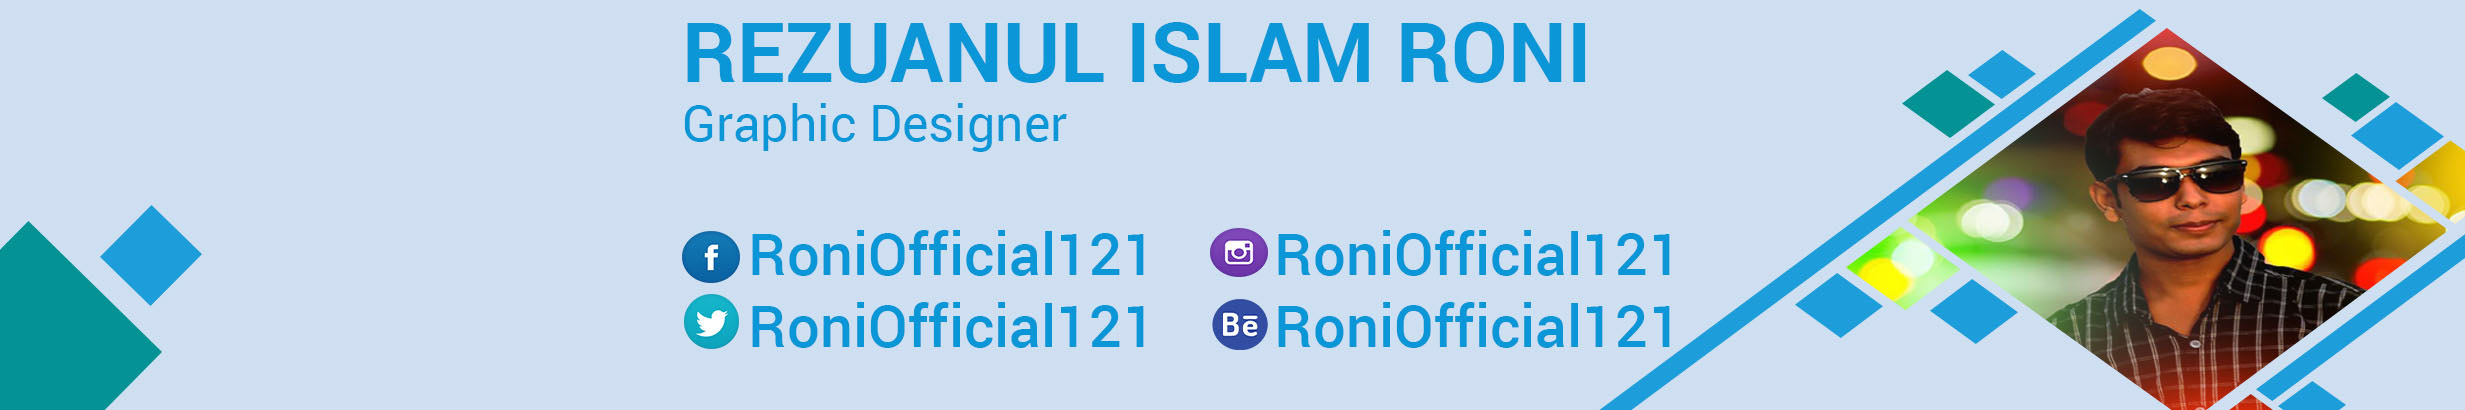 Rezuanul islam roni's profile banner